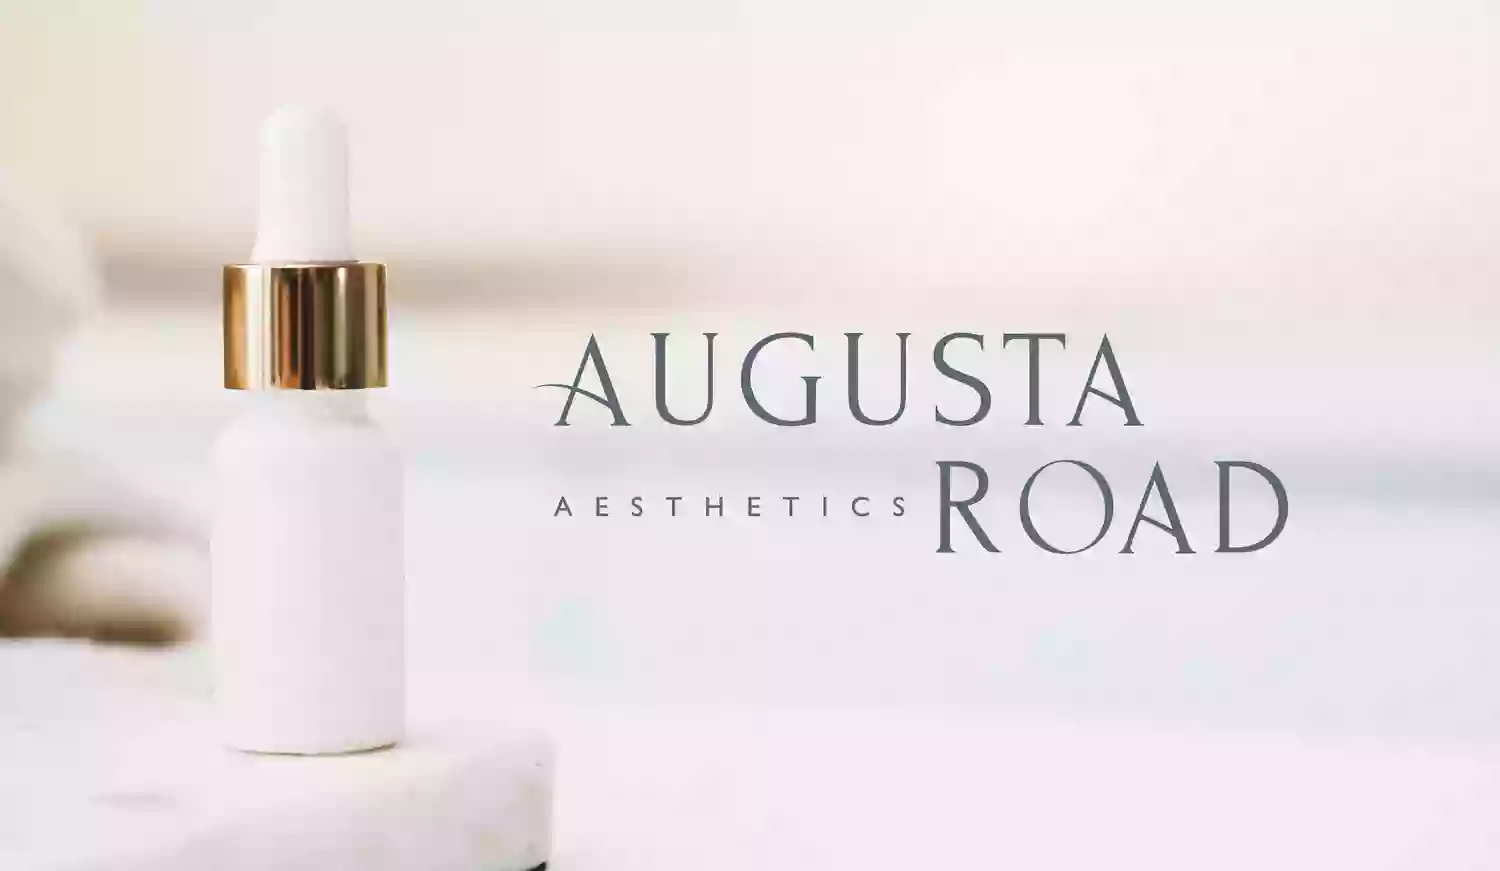 Augusta Road Aesthetics